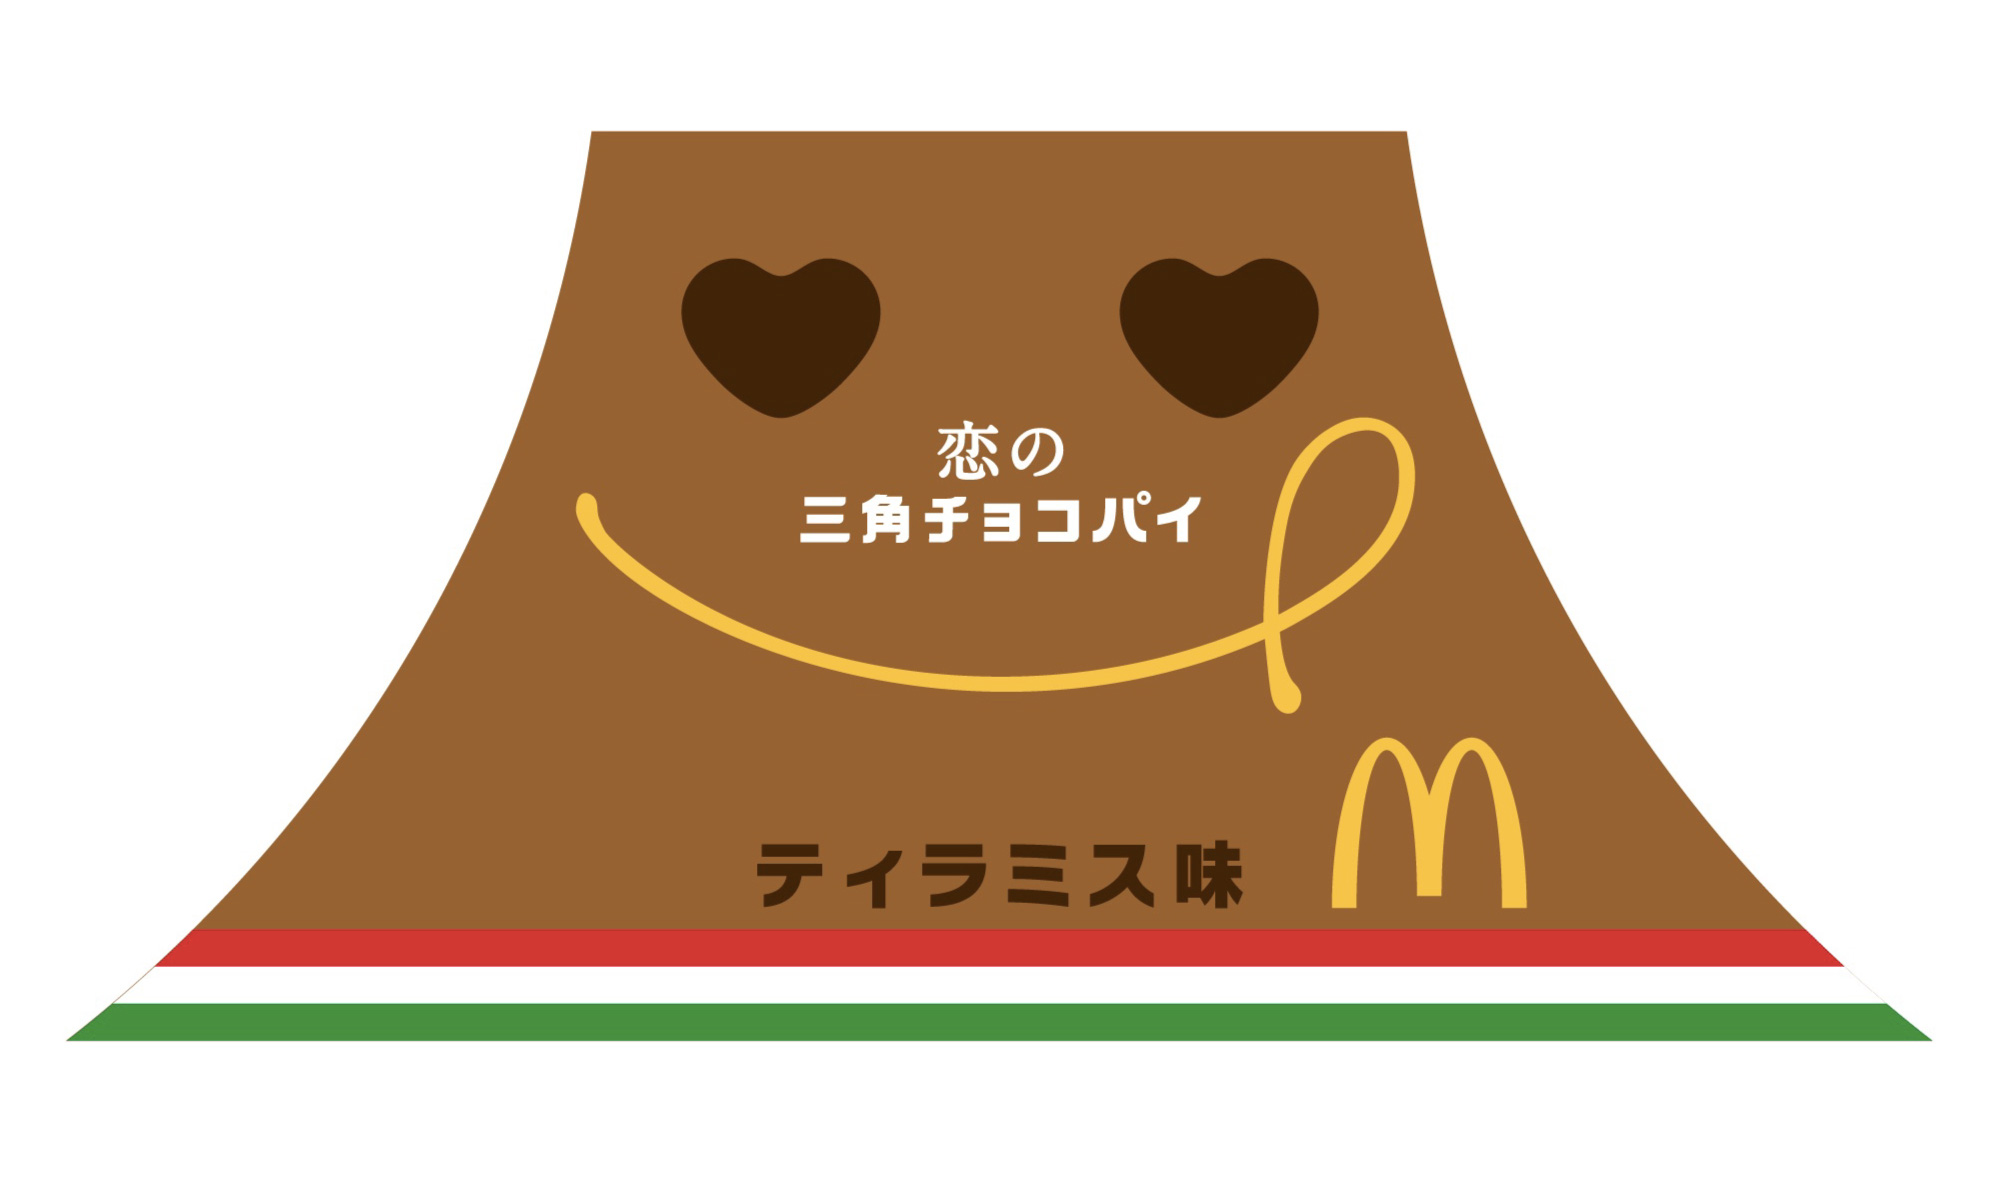 マクドナルド-恋の三角チョコパイ-ティラミス味-麥當勞-McDonald’s-34